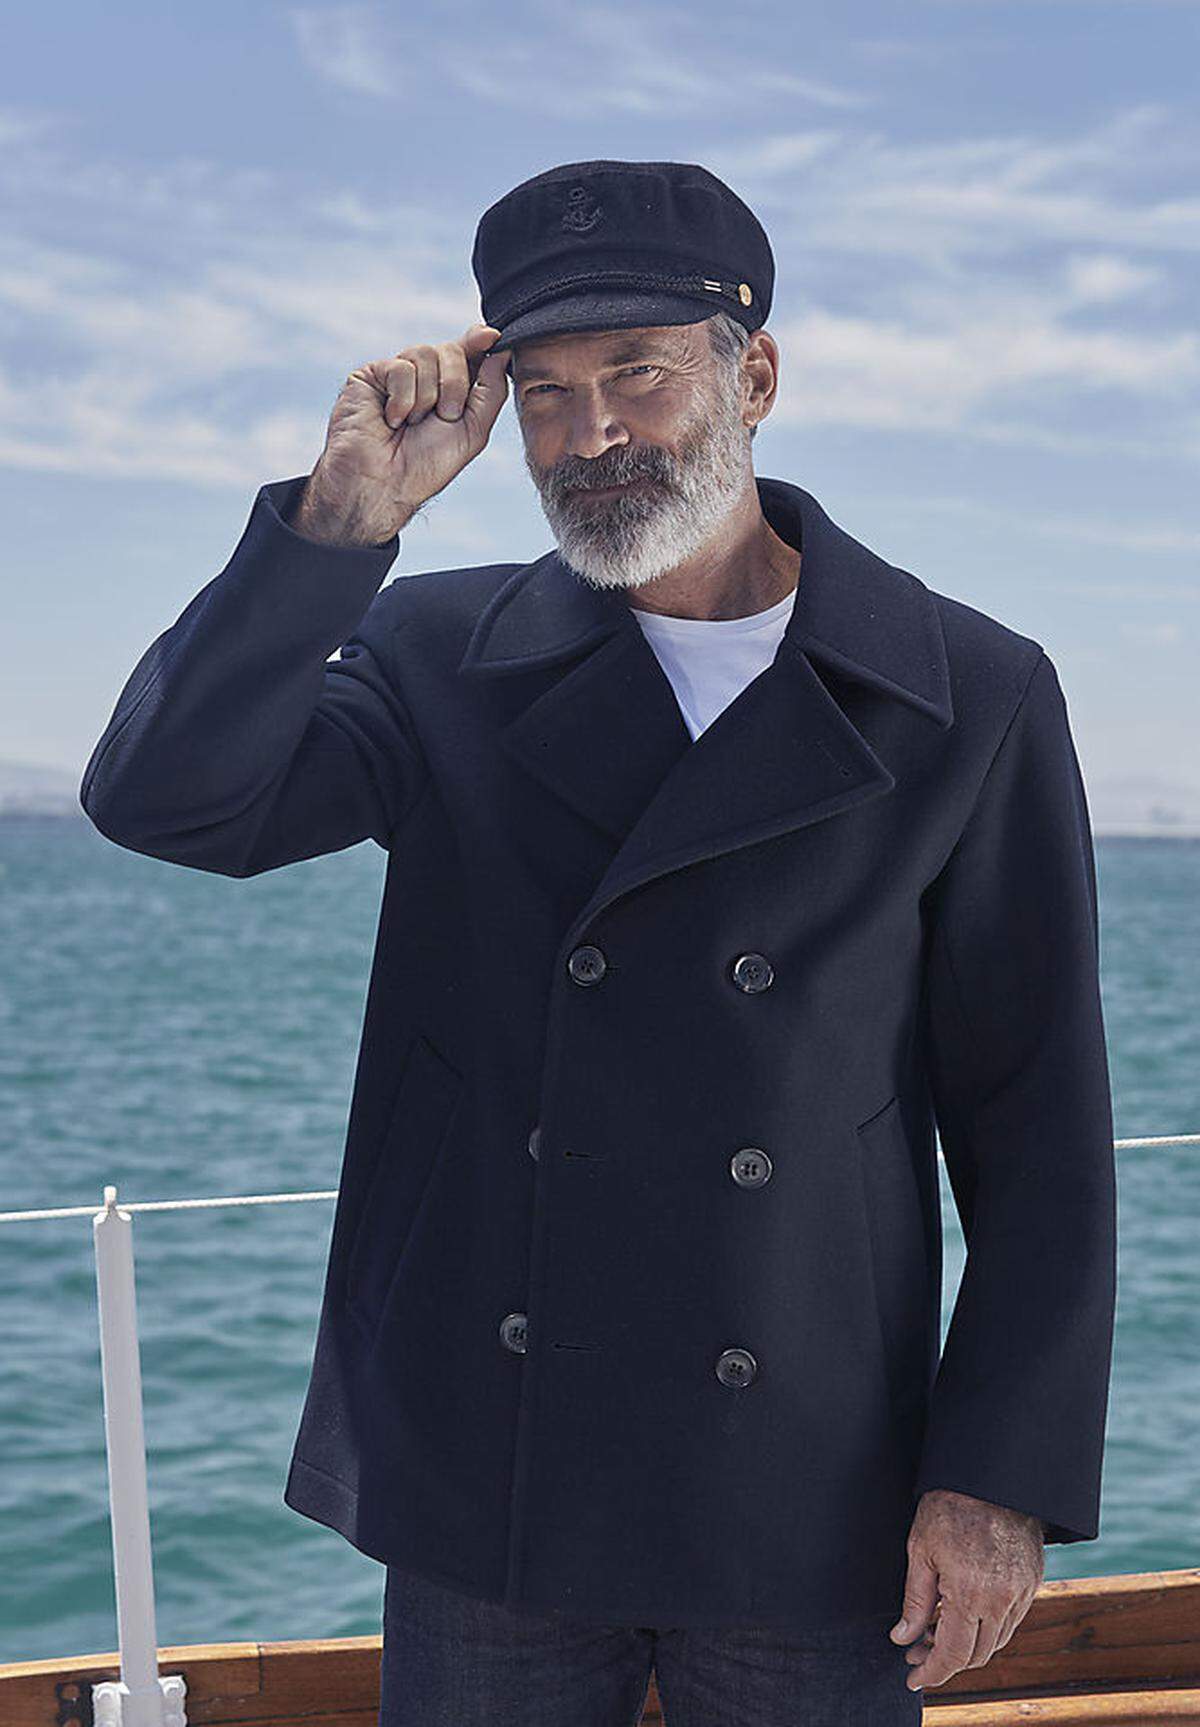 Iglo hat sich einen neuen Käpt'n geangelt: Der Italiener Riccardo Acerbi wurde zum neuen Gesicht der ikonischen Werbekampagne des Tiefkühl-Lebensmittelkonzerns. Auch in Österreich wird der 56-Jährige Fisch für Kinder bewerben - wir sagen: Moin.